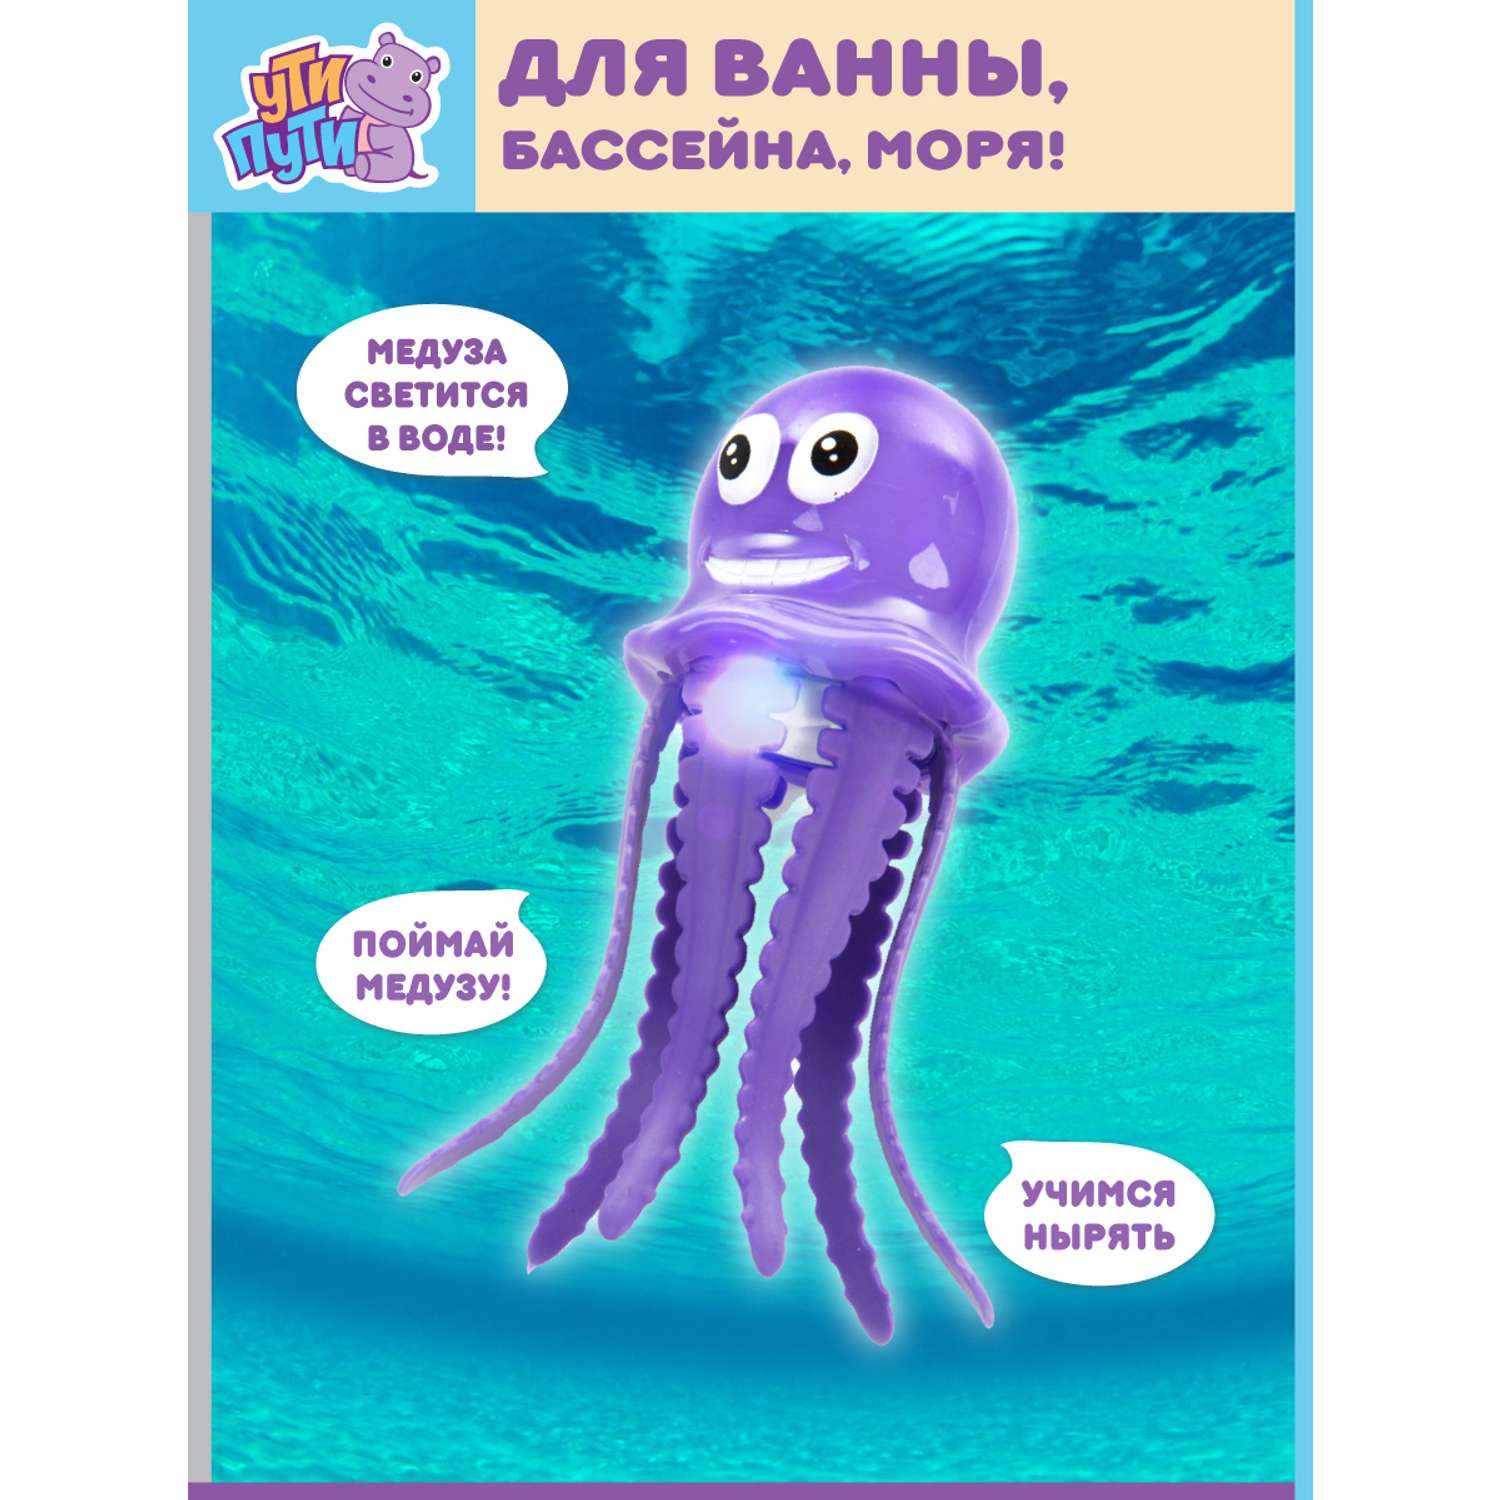 Игрушка для ванны Ути Пути Забавная медуза со световыми эффектами - фото 1